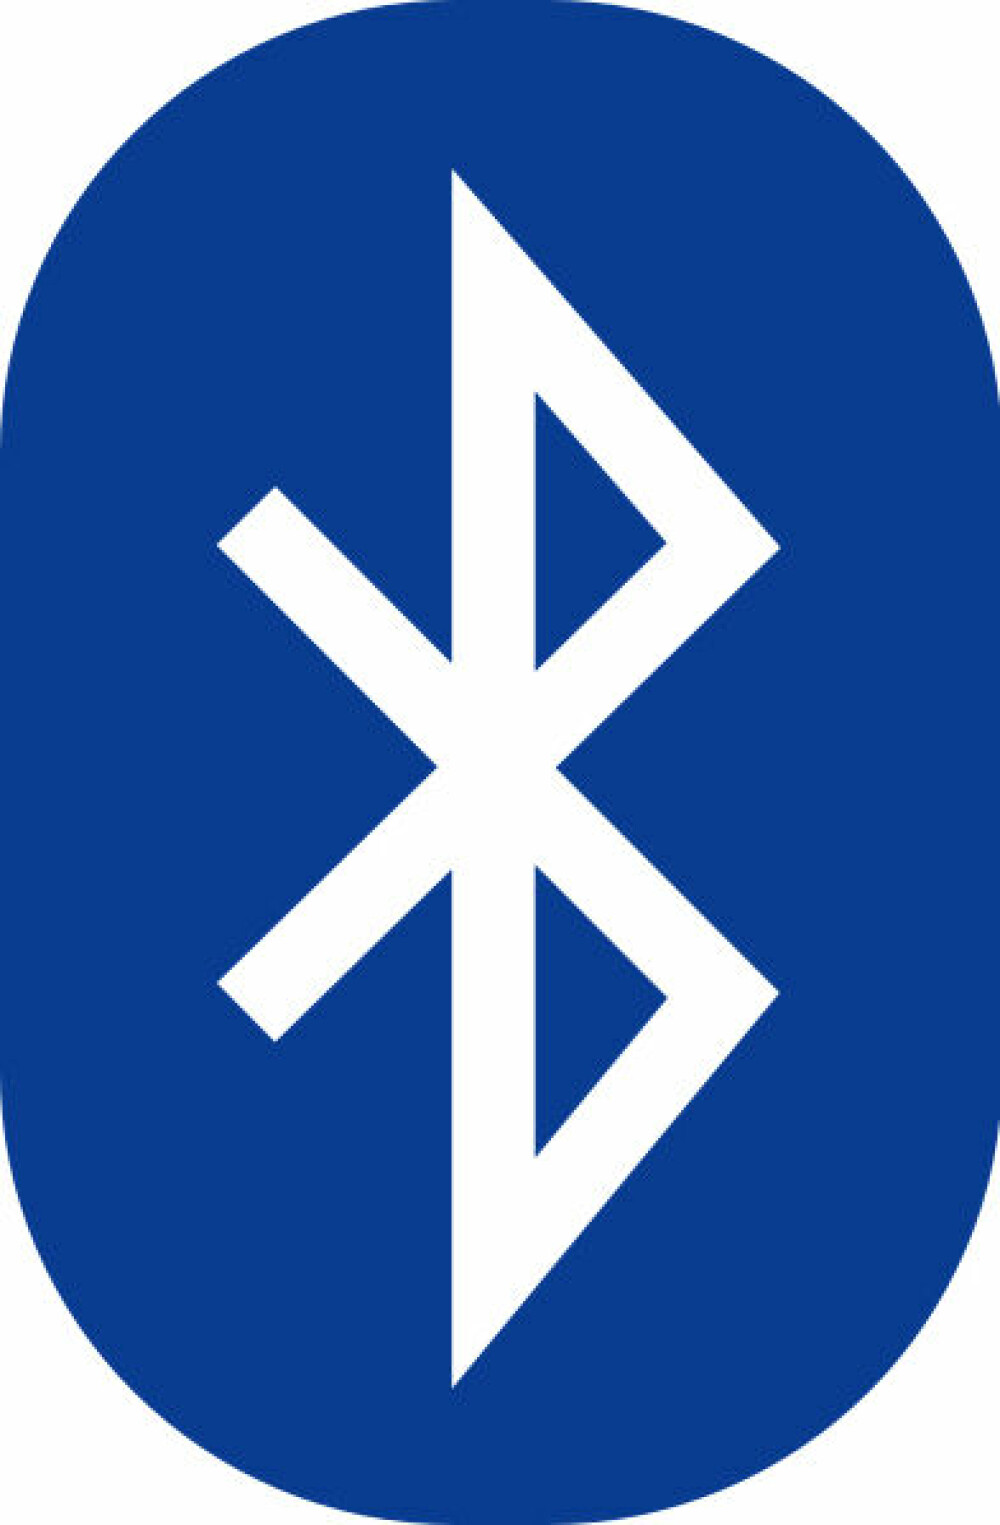 <b>KJENT:</b> Bluetooth-logoen er sammen­satt av runene h og b, initialene til den første danskekongen Harald Blåtann. 